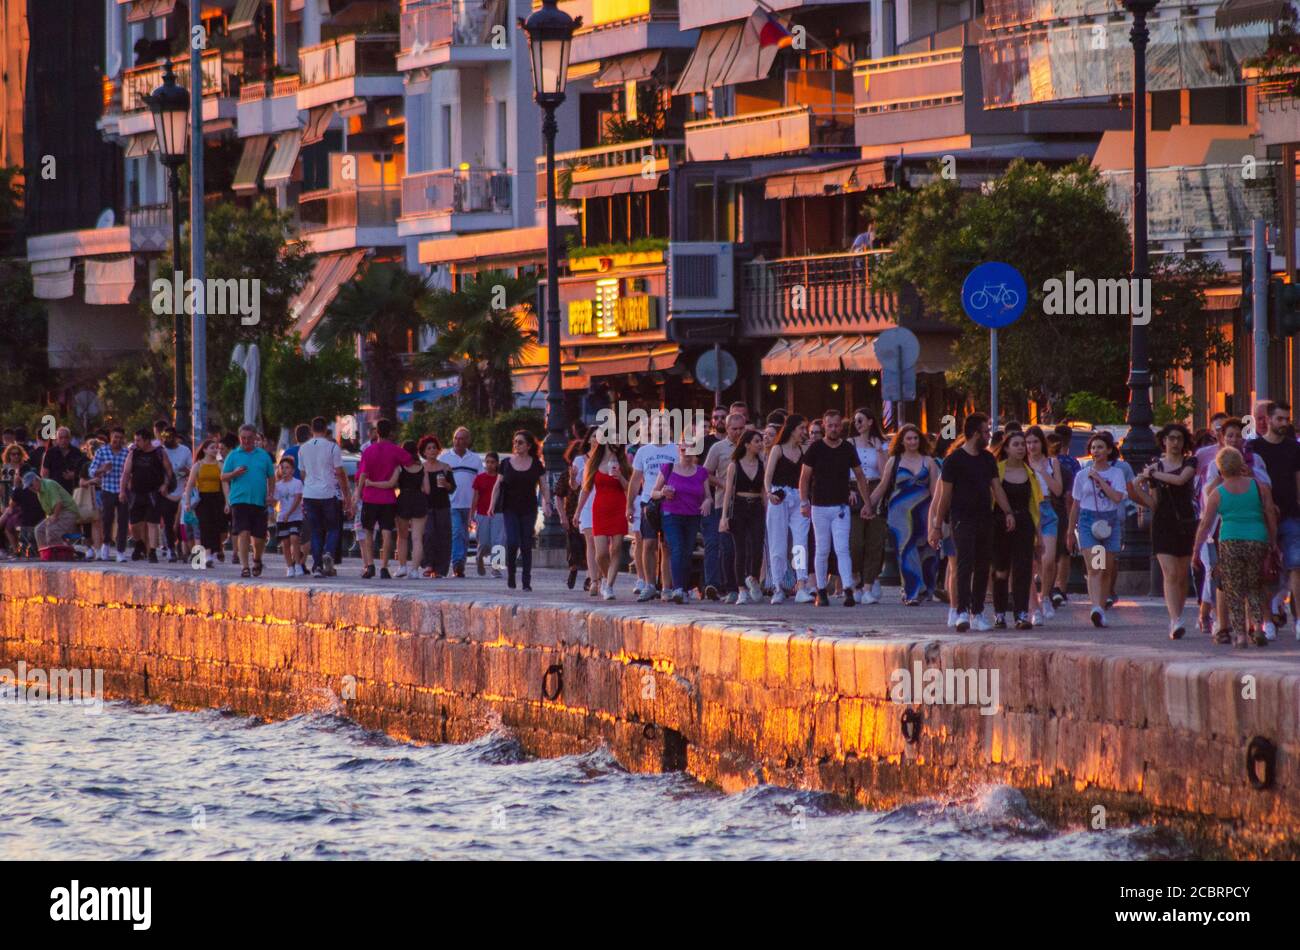 THESSALONIQUE, GRÈCE - 27 juin 2020 - UN front de mer bondé à Thessalonique, Grèce, qui a un couvre-feu COVID-19 de 23 H à 7 H pour les entreprises à essayer Banque D'Images